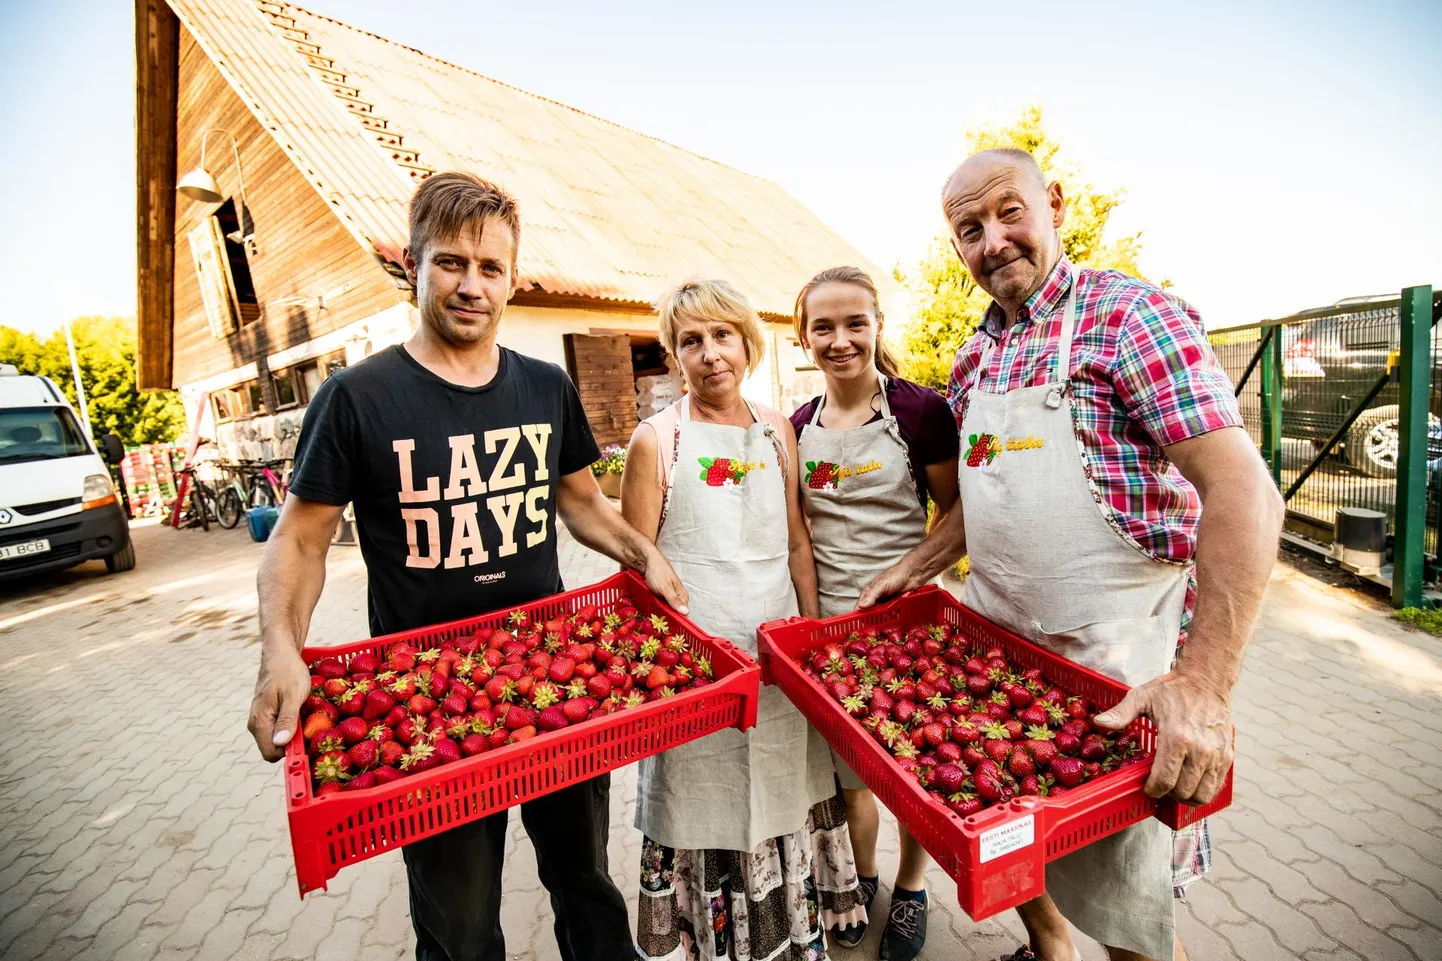 Harjumaal asuva Raja talu maasikakasvatajad Lõive Tärn ja Gunnar Tärn tütre ning pojaga. Pika kogemusega Gunnar Tärni sõnul oli väga raske maasikahooaeg, aga nad suutsid kõik marjad ära korjata ja ka realiseerida.